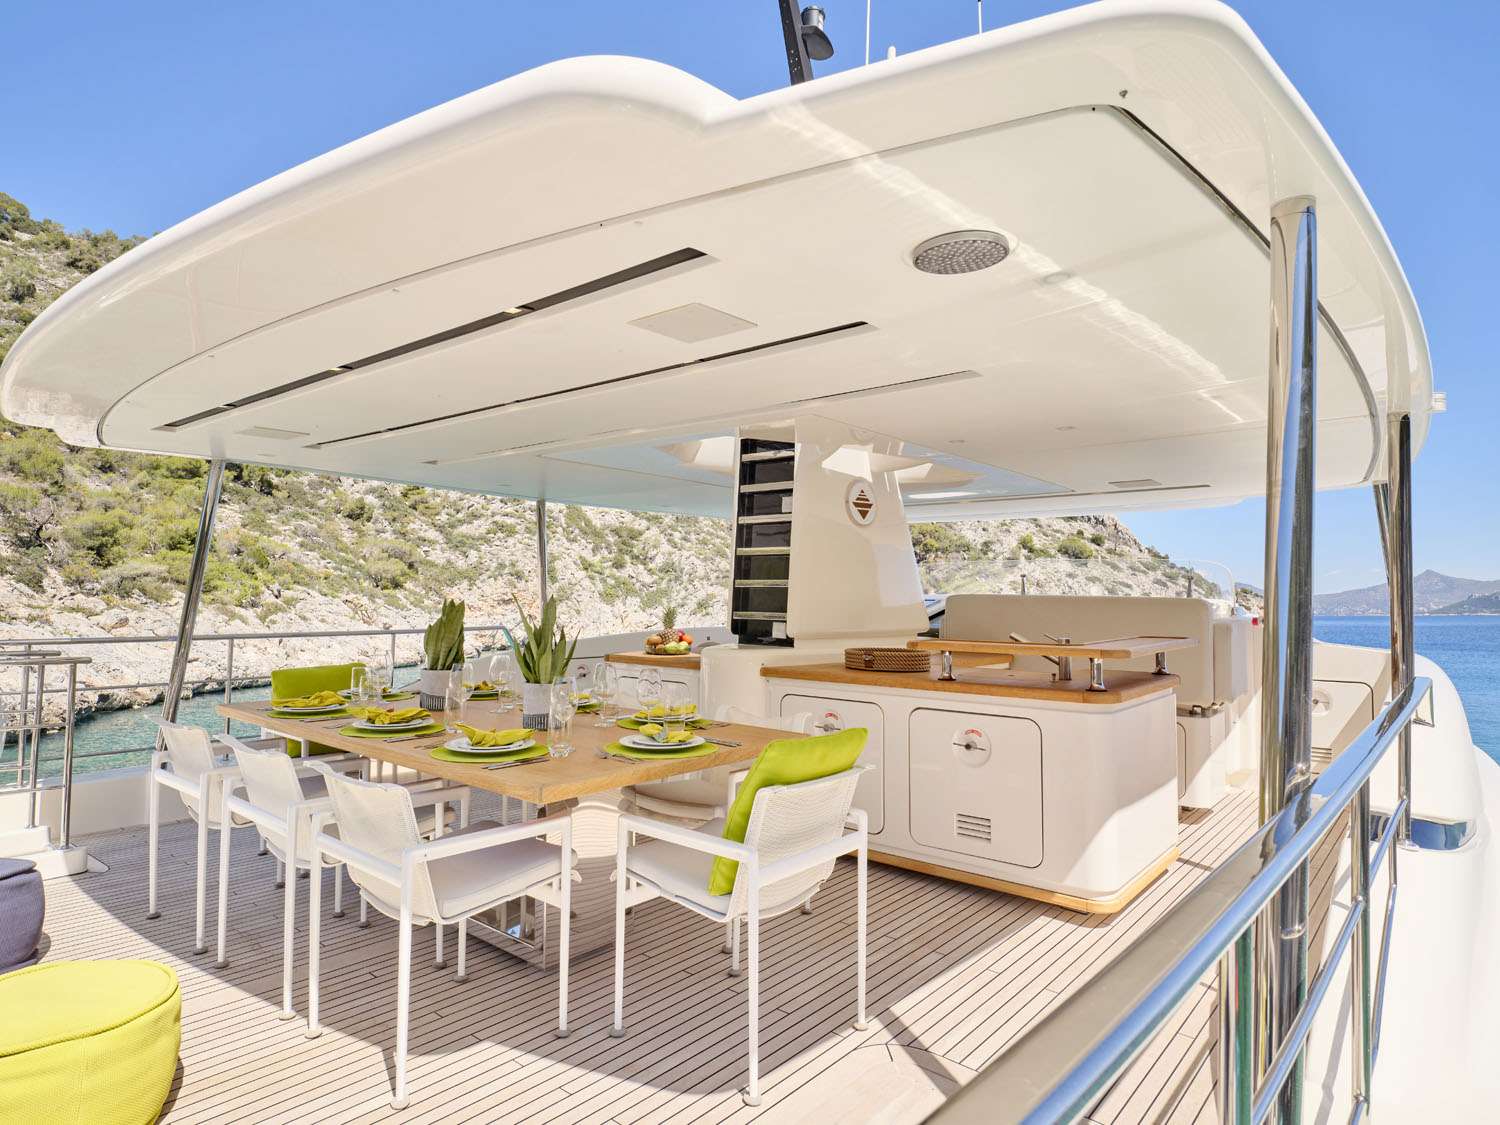 FLOR Yacht Charter - Sun Deck Dining Area